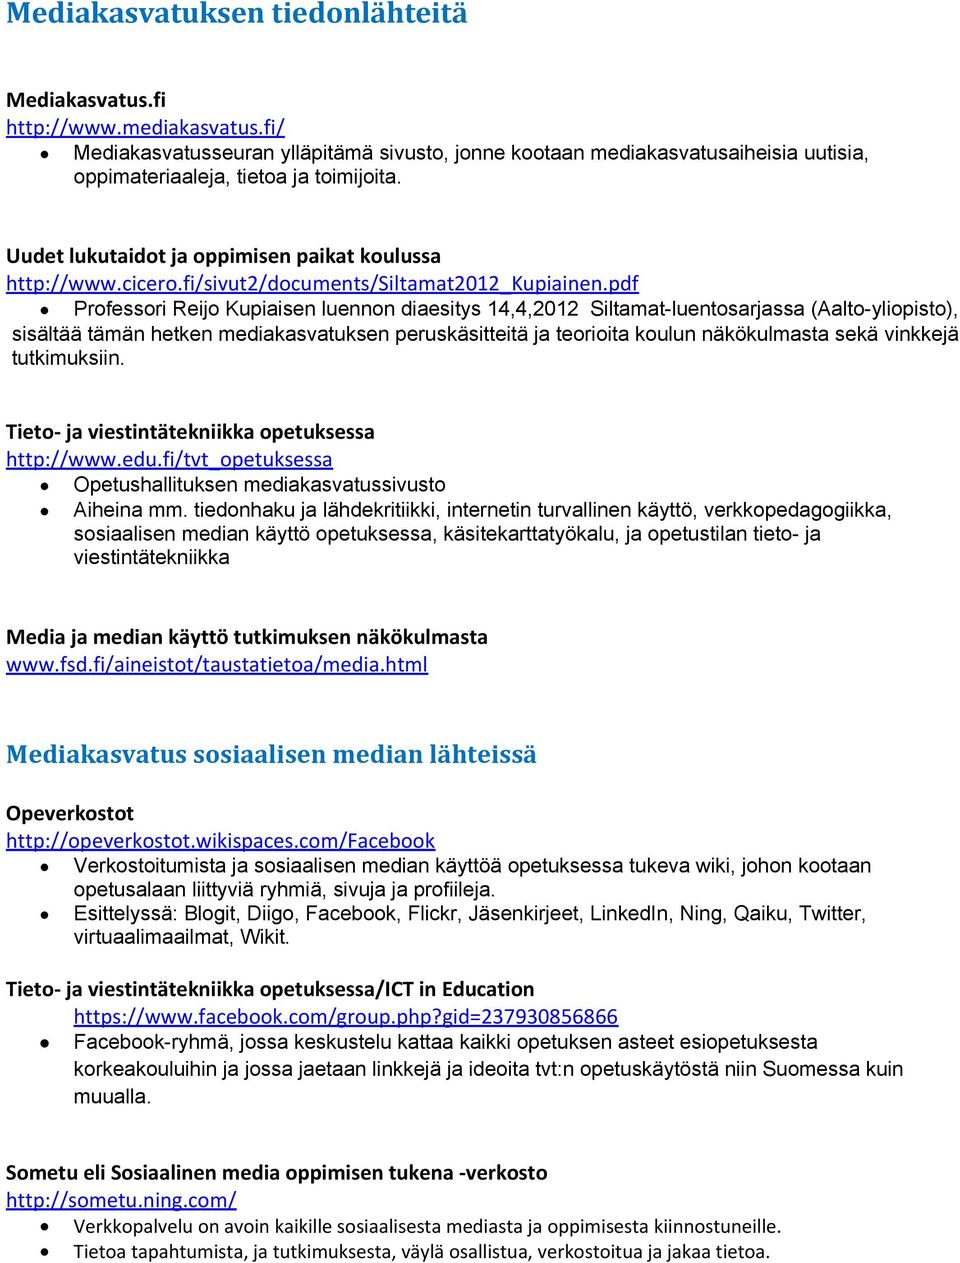 pdf Prfessri Reij Kupiaisen luennn diaesitys 14,4,2012 Siltamat-luentsarjassa (Aalt-ylipist), sisältää tämän hetken mediakasvatuksen peruskäsitteitä ja teriita kulun näkökulmasta sekä vinkkejä